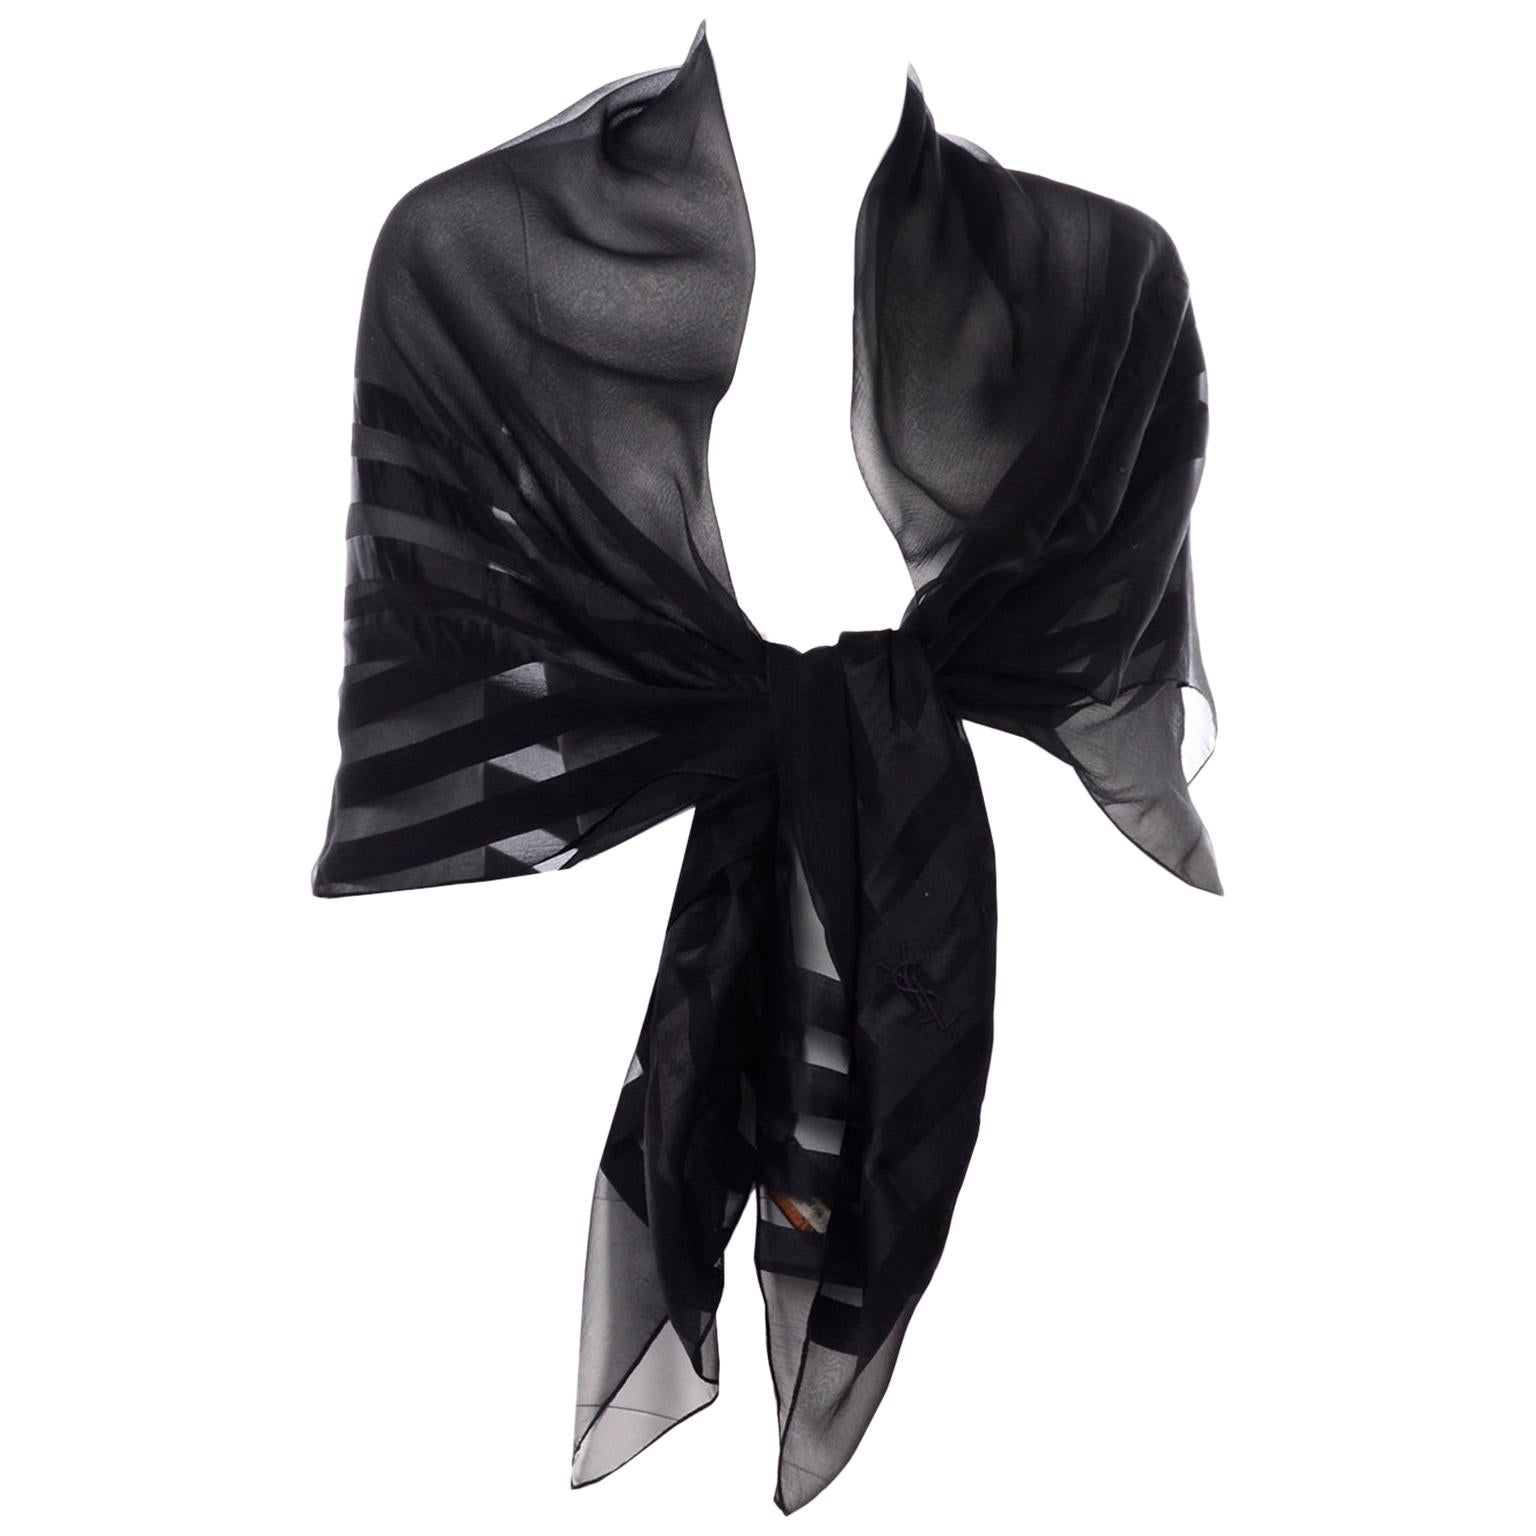 Yves Saint Laurent Foulards Silk Oversized Large Black Sheer Scarf or Shawl Wrap